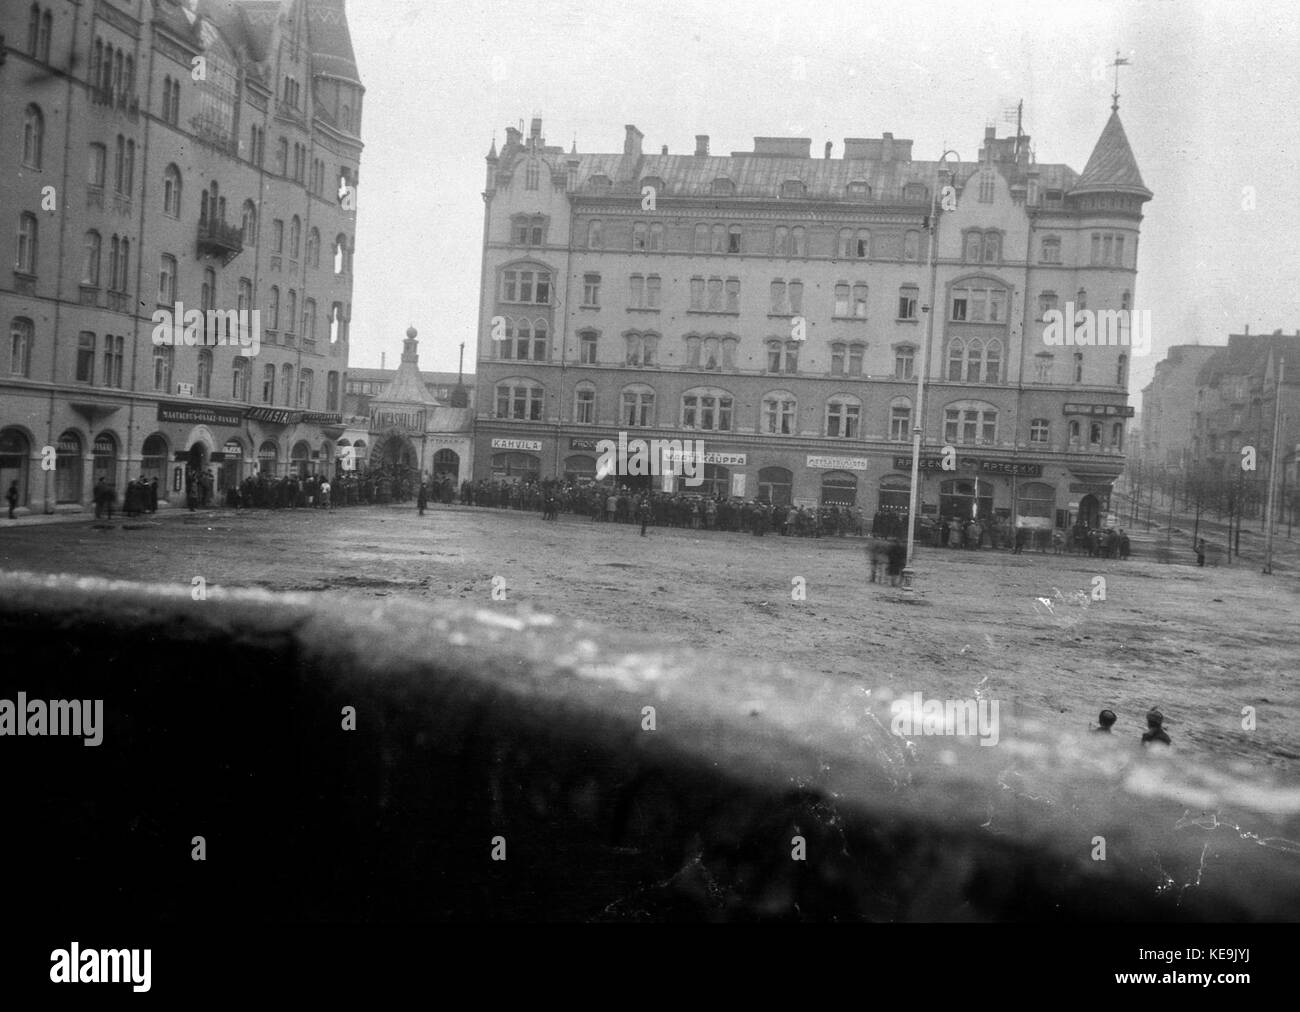 Tampereen raatihuoneen puolustajat ovat antautuneet 5.4.1918 (26696840560) Stock Photo